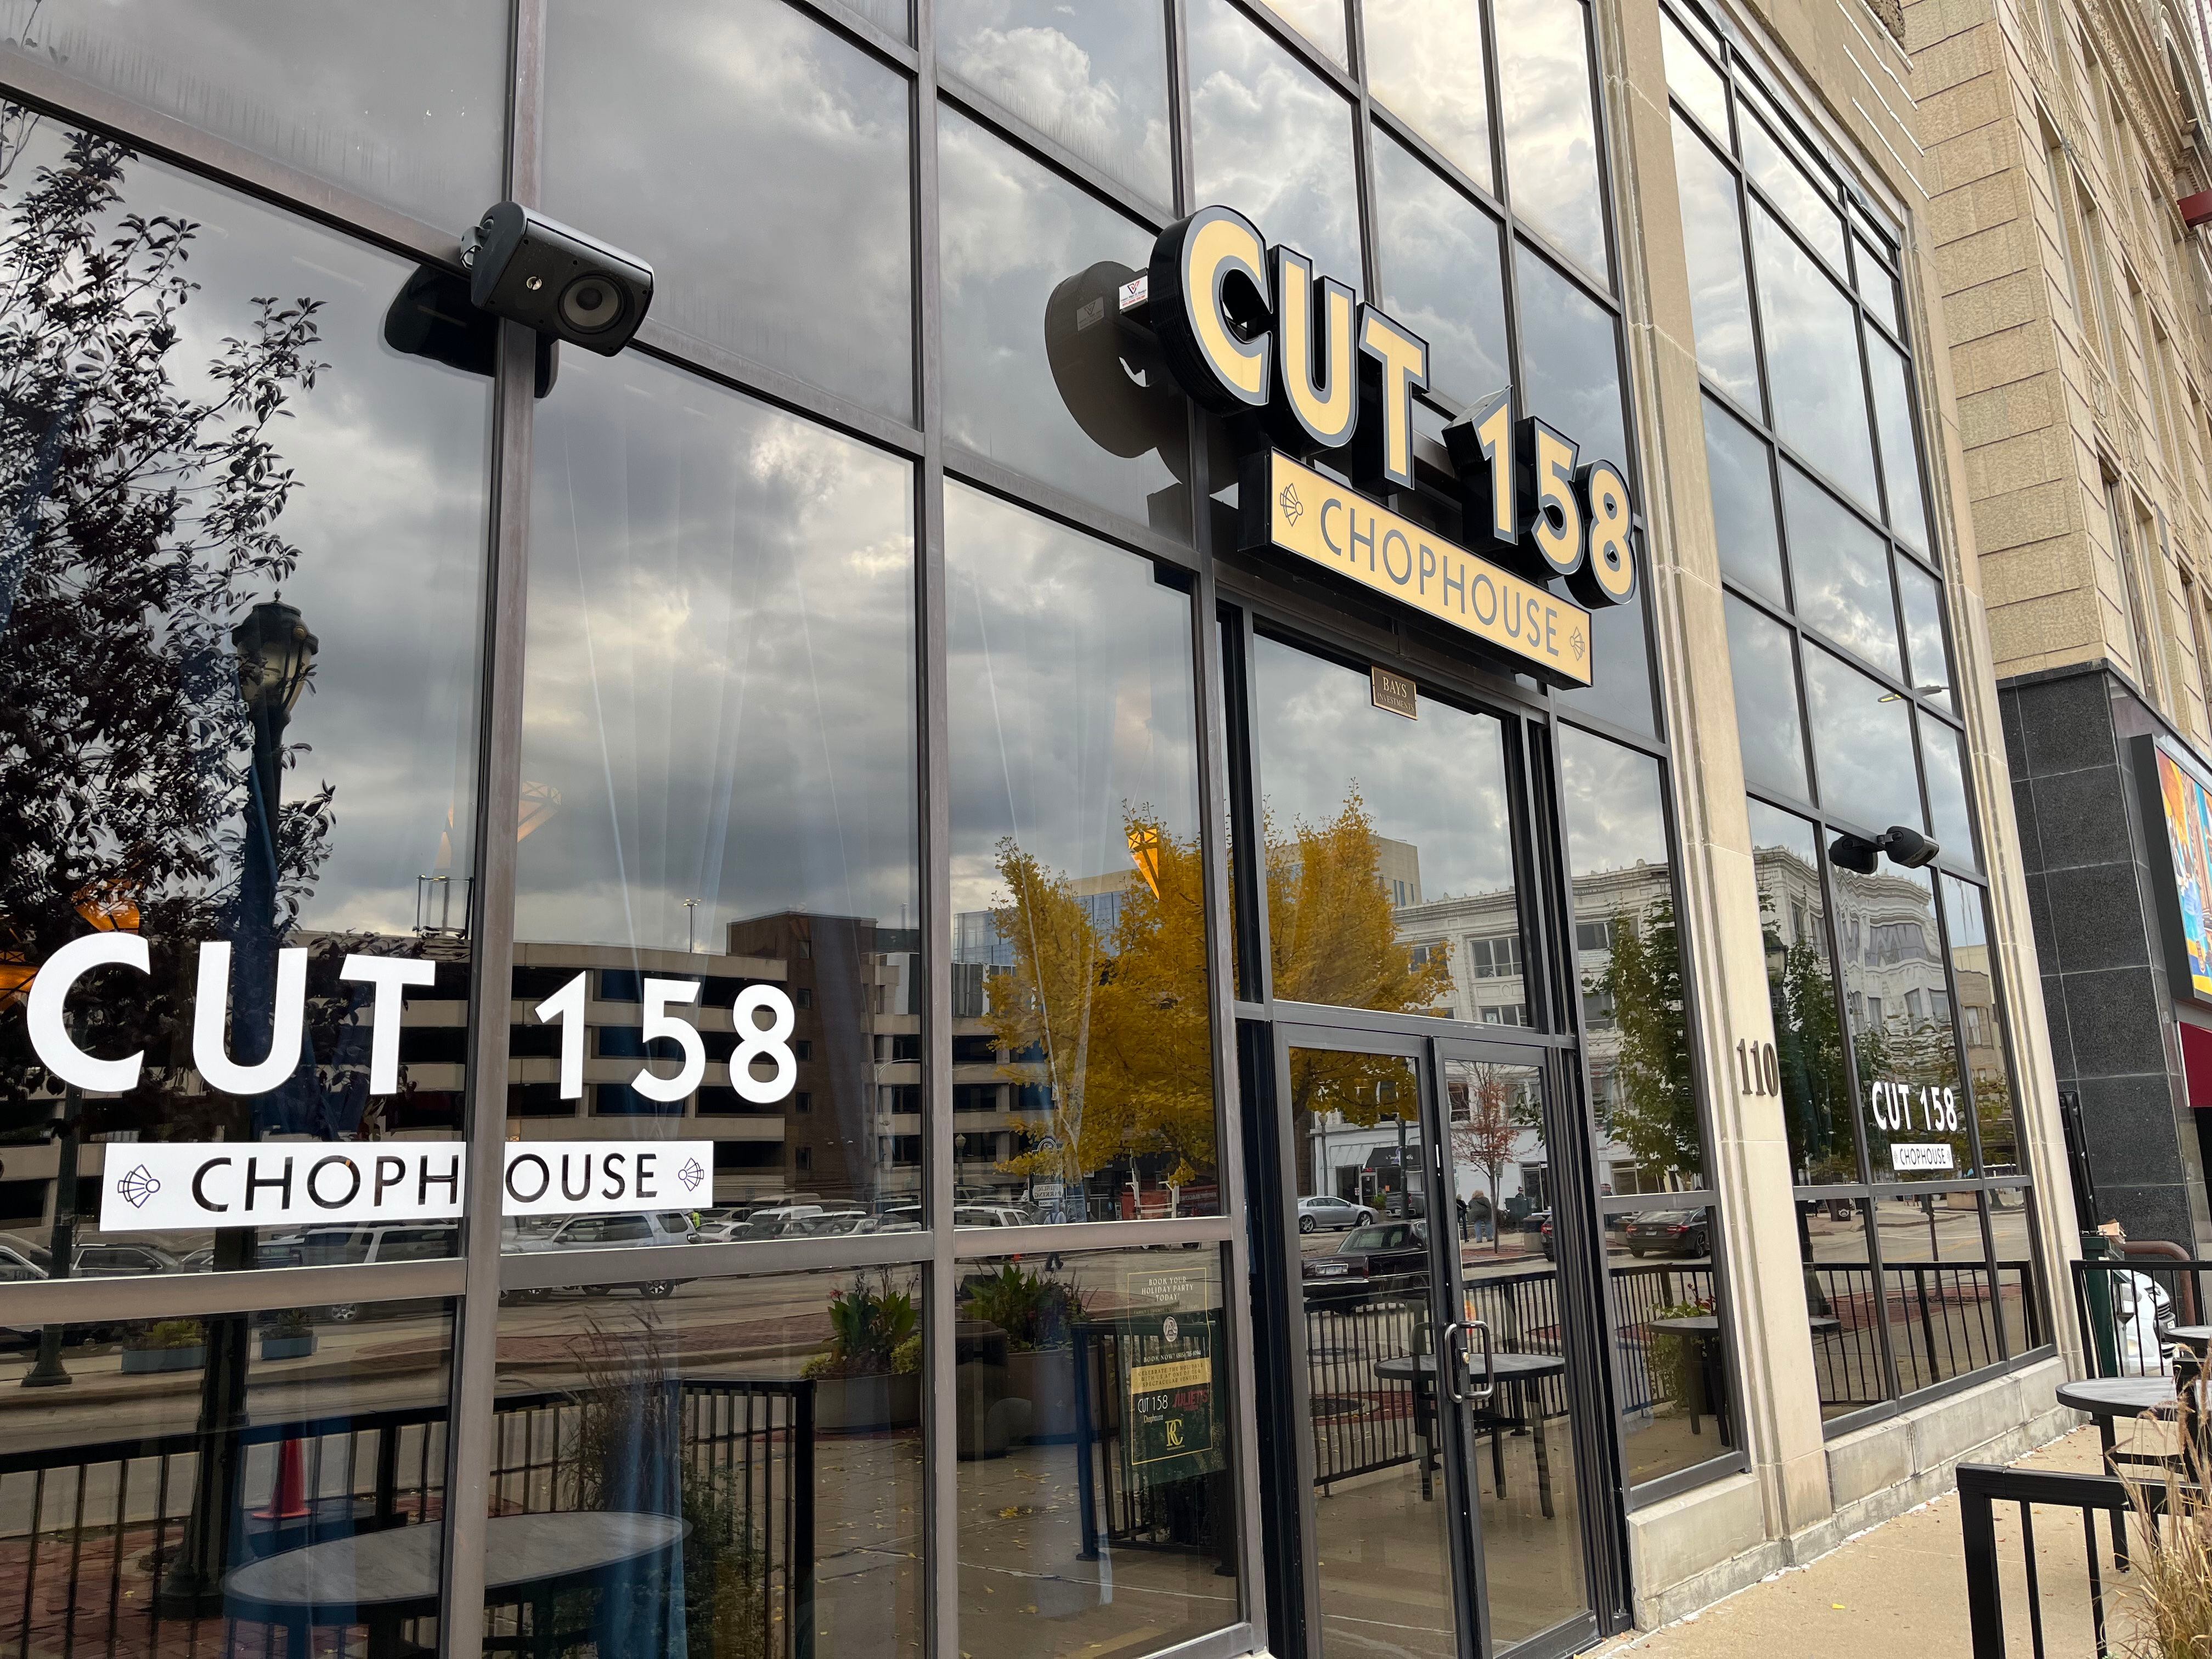 CUT 158 Chophouse, 110 N. Chicago St., Joliet, seen on Thursday, Oct. 26, 2023.